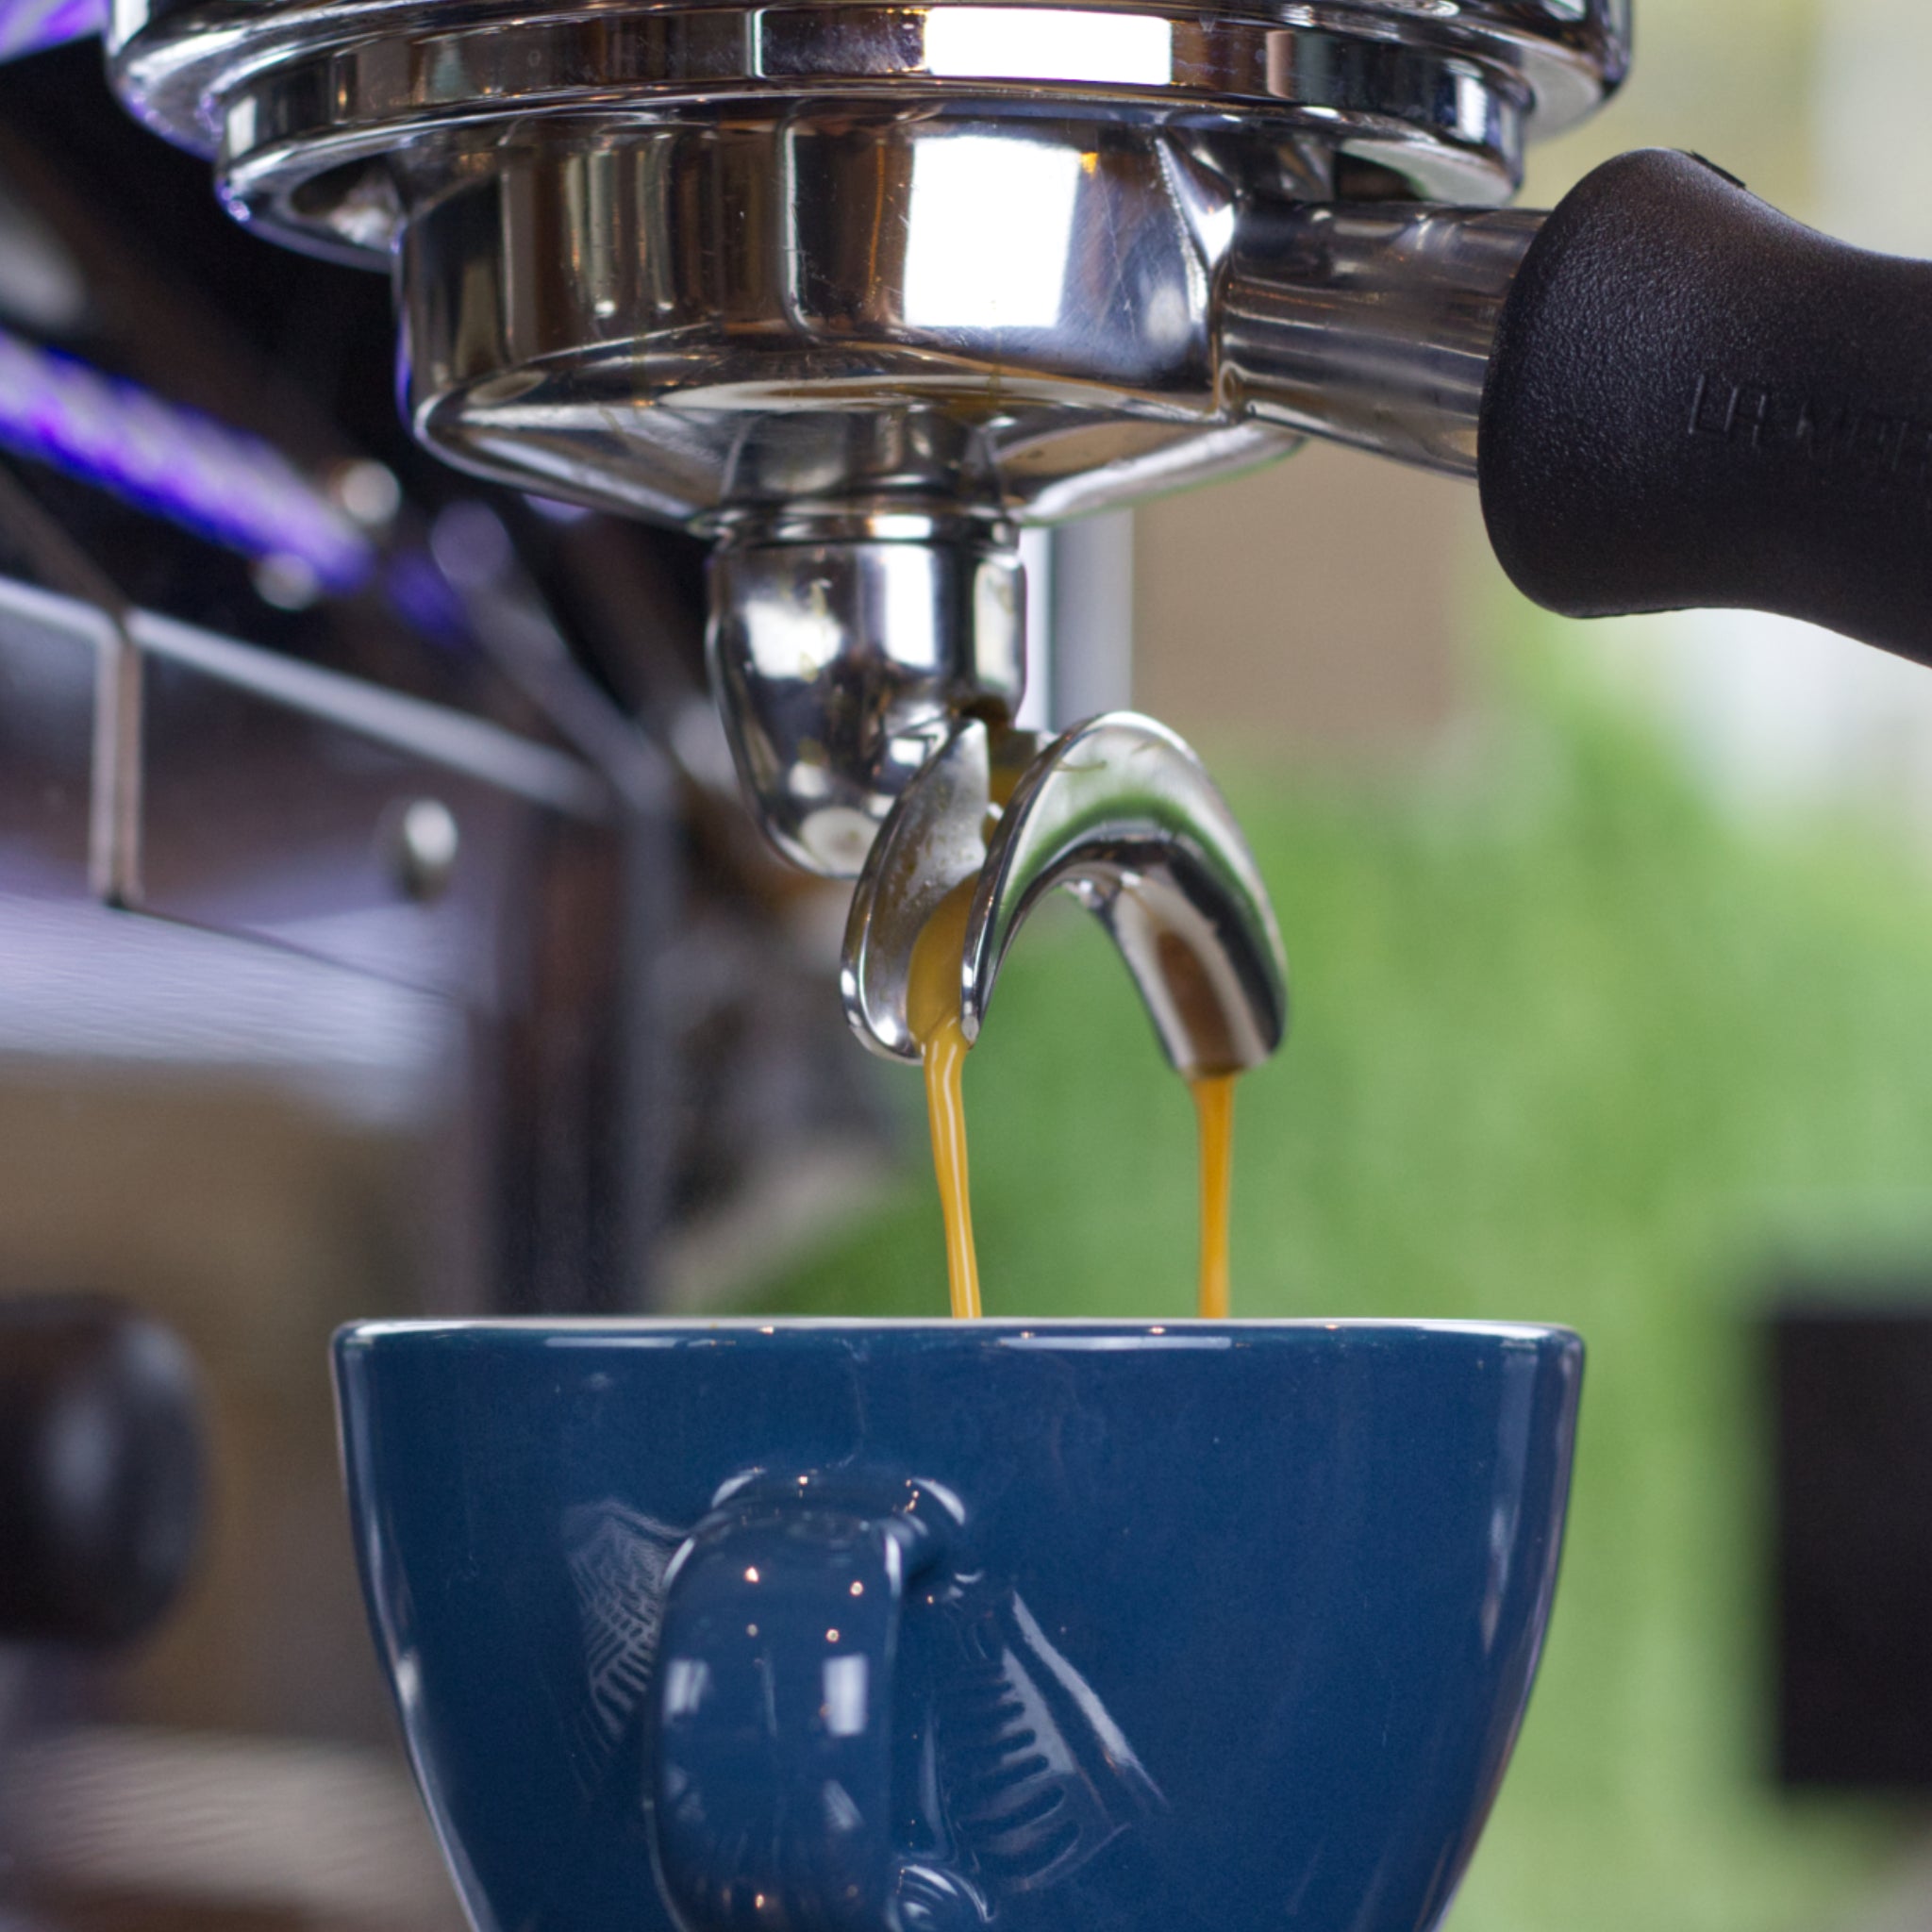 Leckerer Kaffee läuft vom Siebträger in eine blaue Tasse.